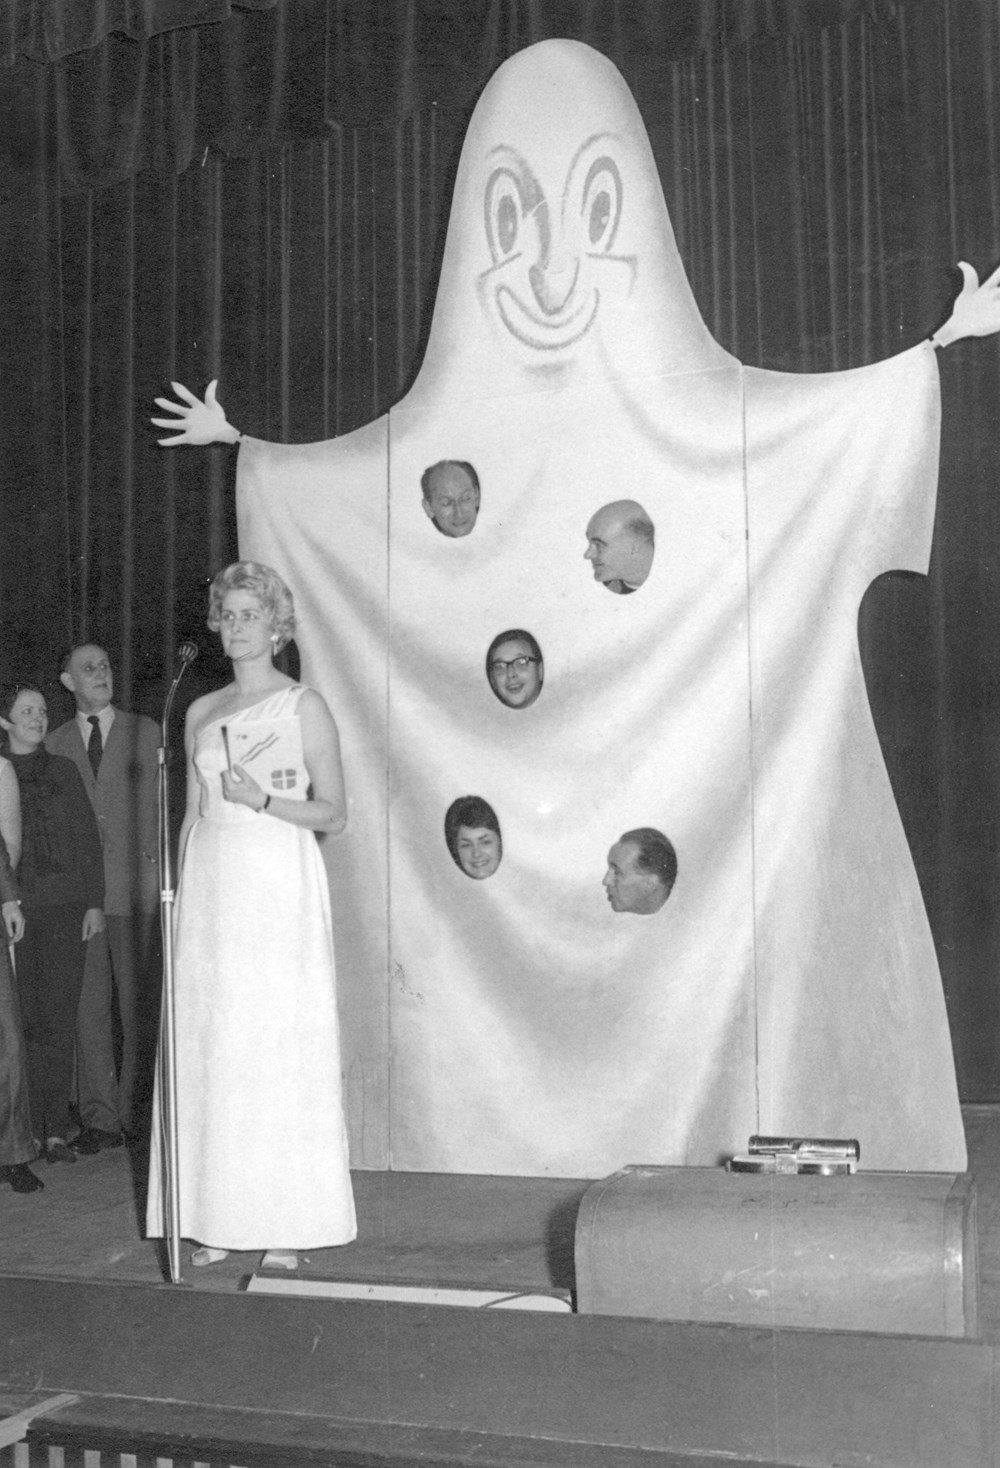 1963 Verenigingsleven Revue 'Het spookt bij de Z.A.C.'